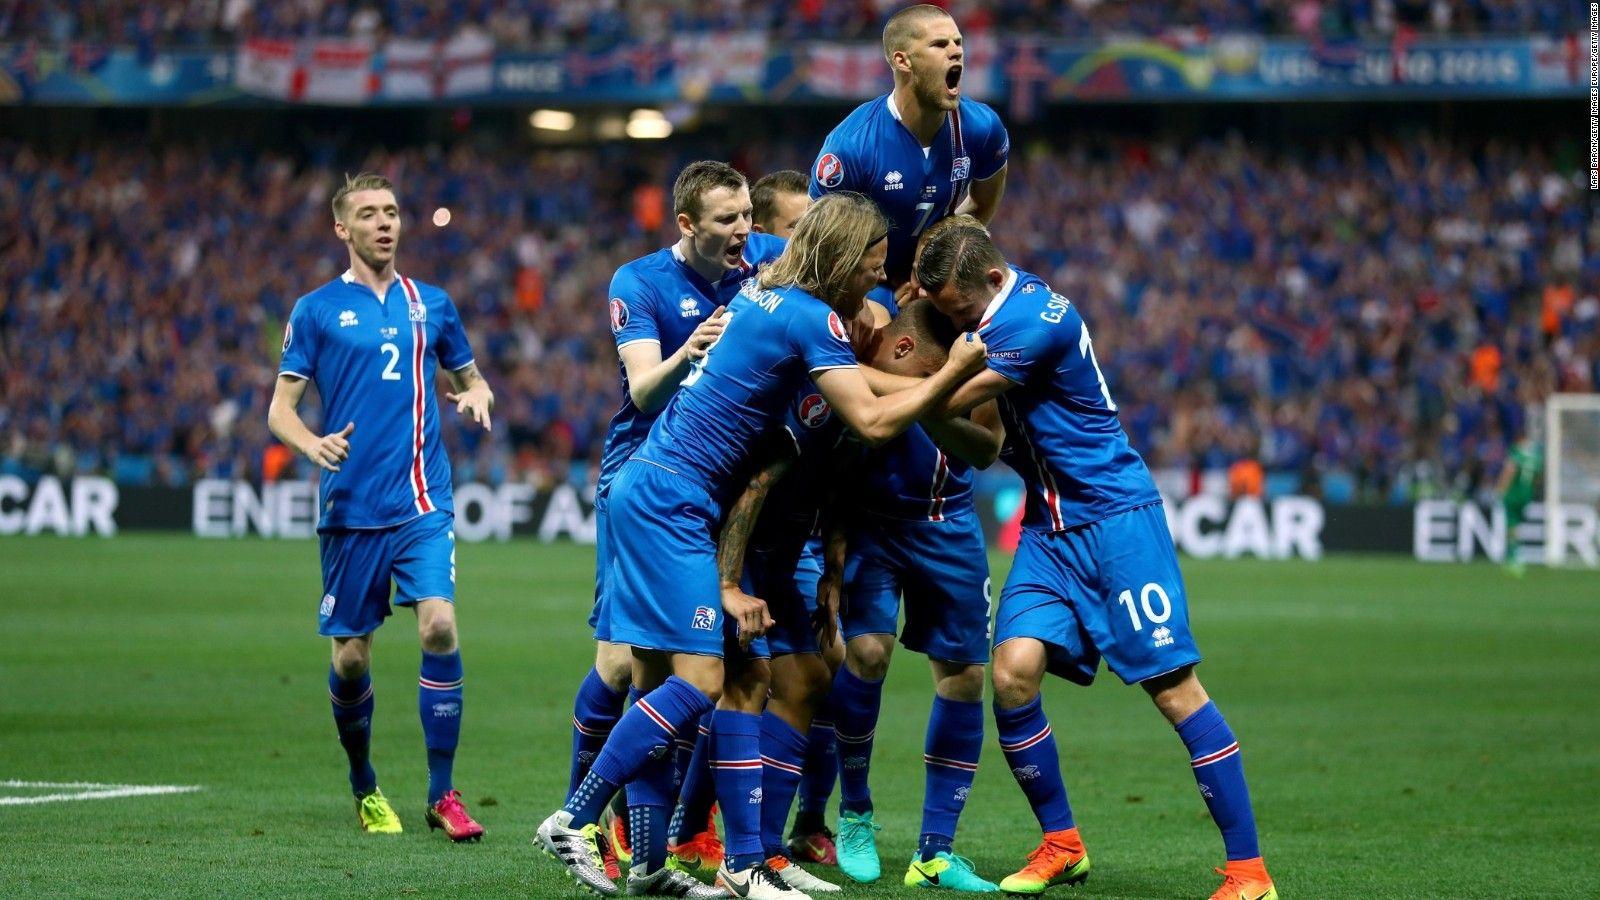 Euro 2016: Iceland shocks England in historic upset